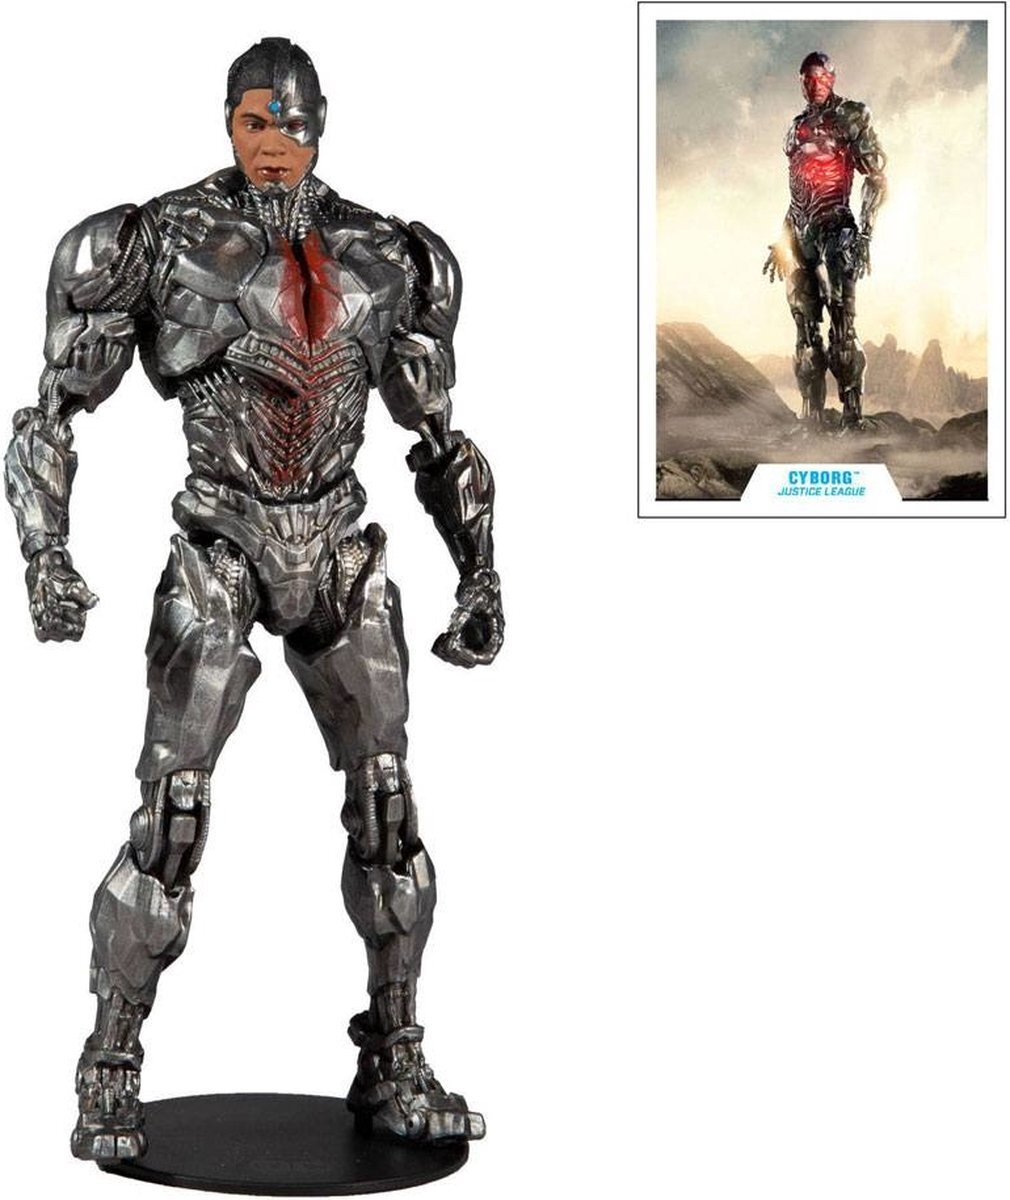 Mcfarlane DC JUSTICE LEAGUE - Cyborg - Action Figure 18cm